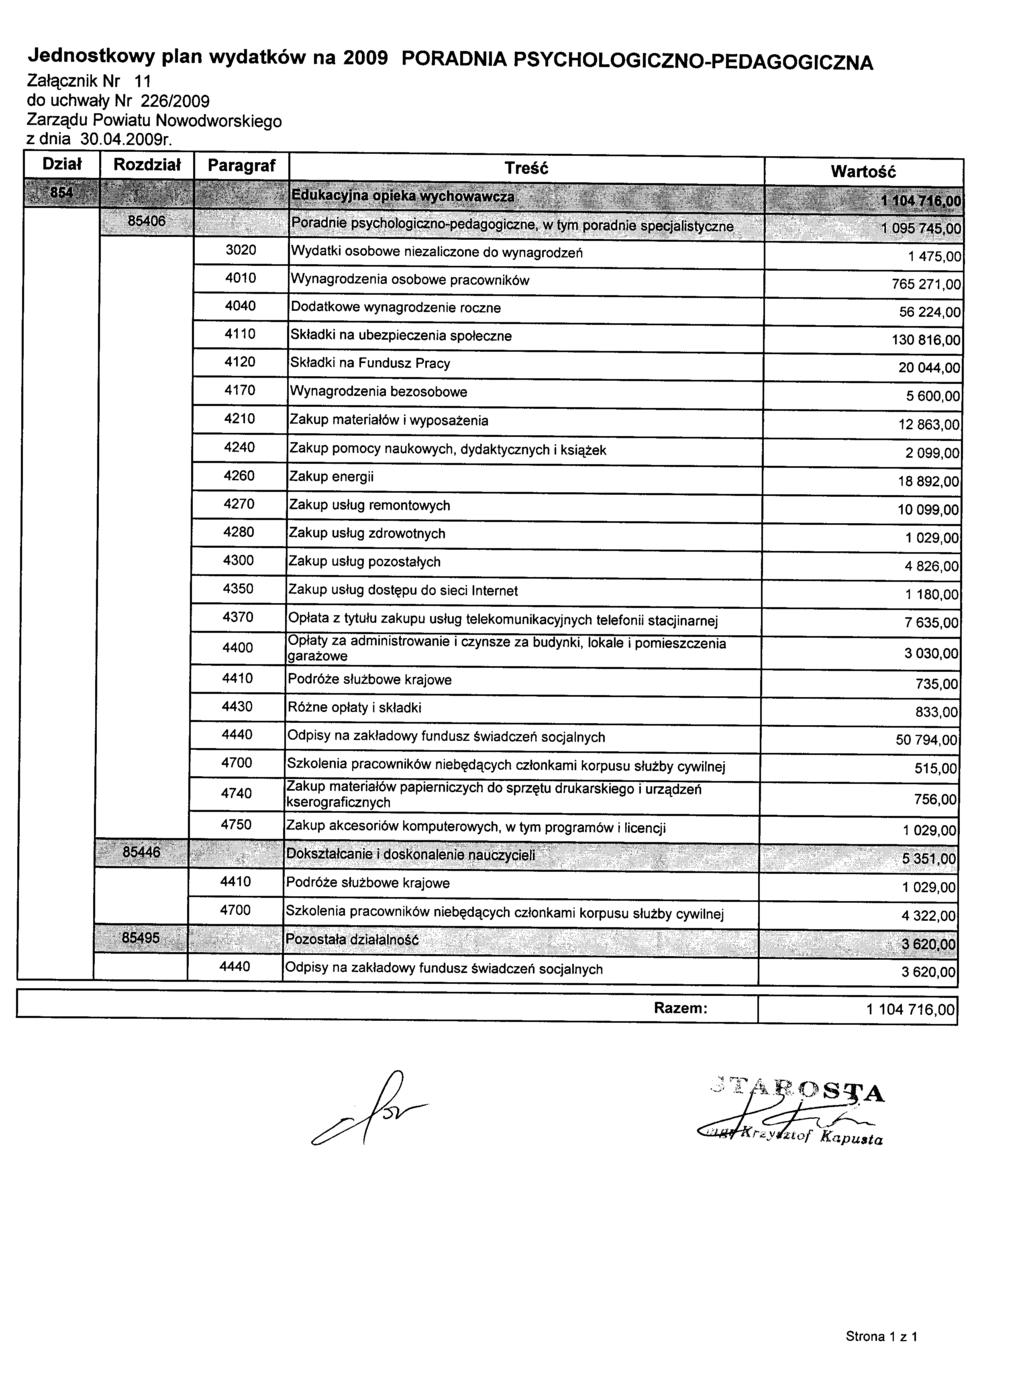 Jednostkowy plan wydatków na 2009 PORADNIA PSYCHOLOGICZNO-PEDAGOGICZNA Załącznik Nr 11 do uchwały Nr 226/2009 Zarządu Powiatu Nowodworskiego z dnia 30.04.2009r.